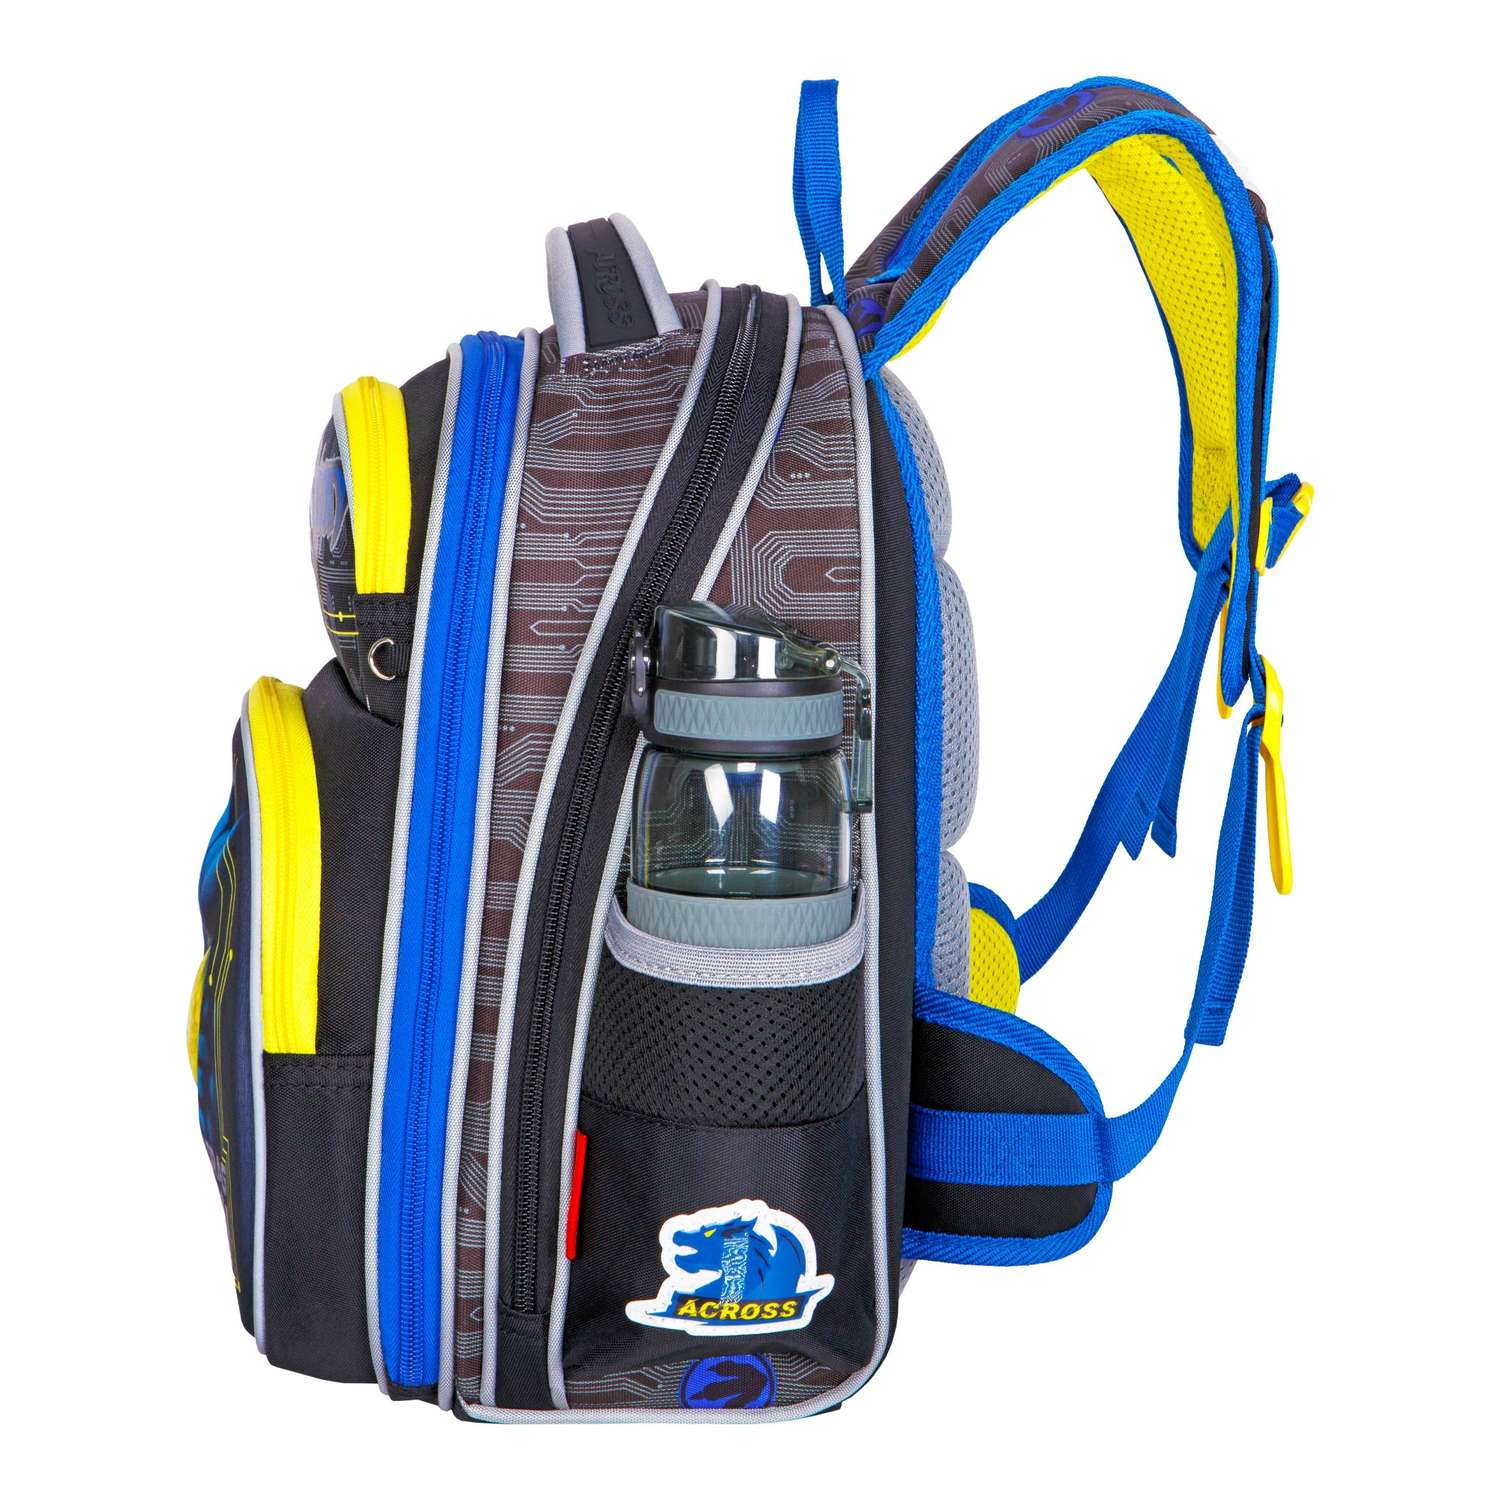 Рюкзак школьный ACROSS с наполнением: каркасный пенал мешочек для обуви и брелок - фото 9